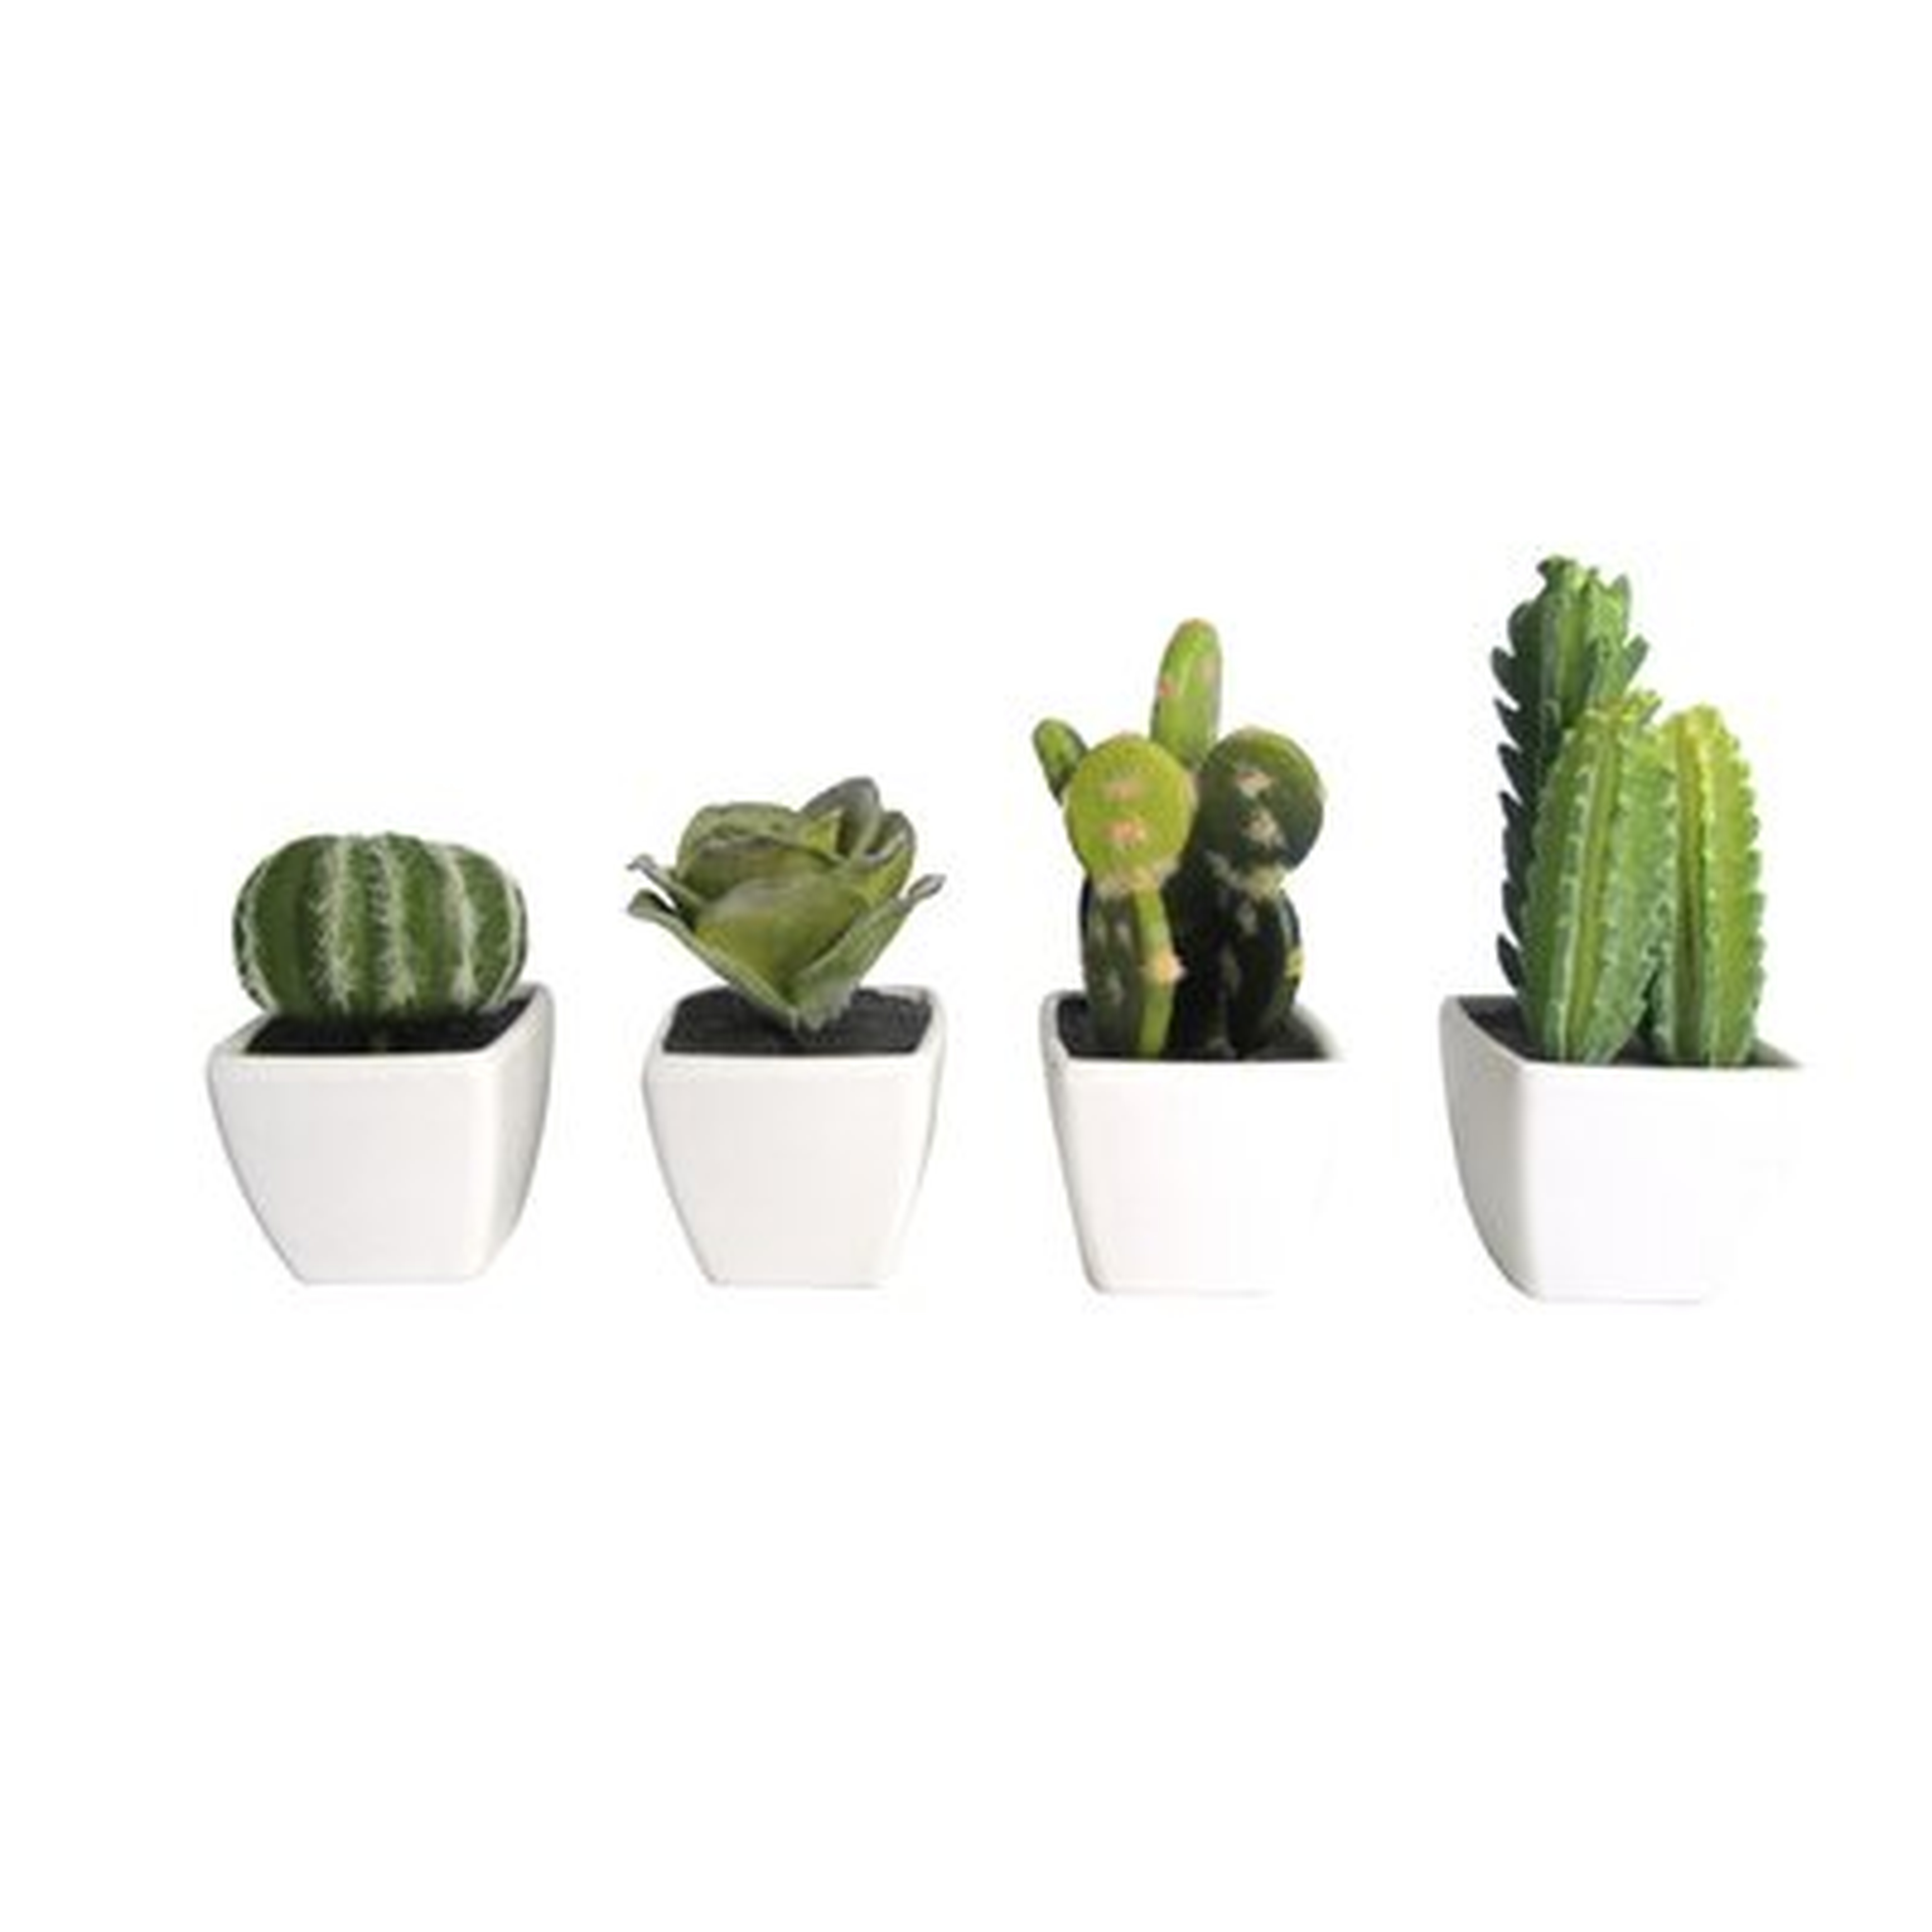 Artificial Mini Succulent & Cactus Plants In Cube-shaped Pots - Wayfair